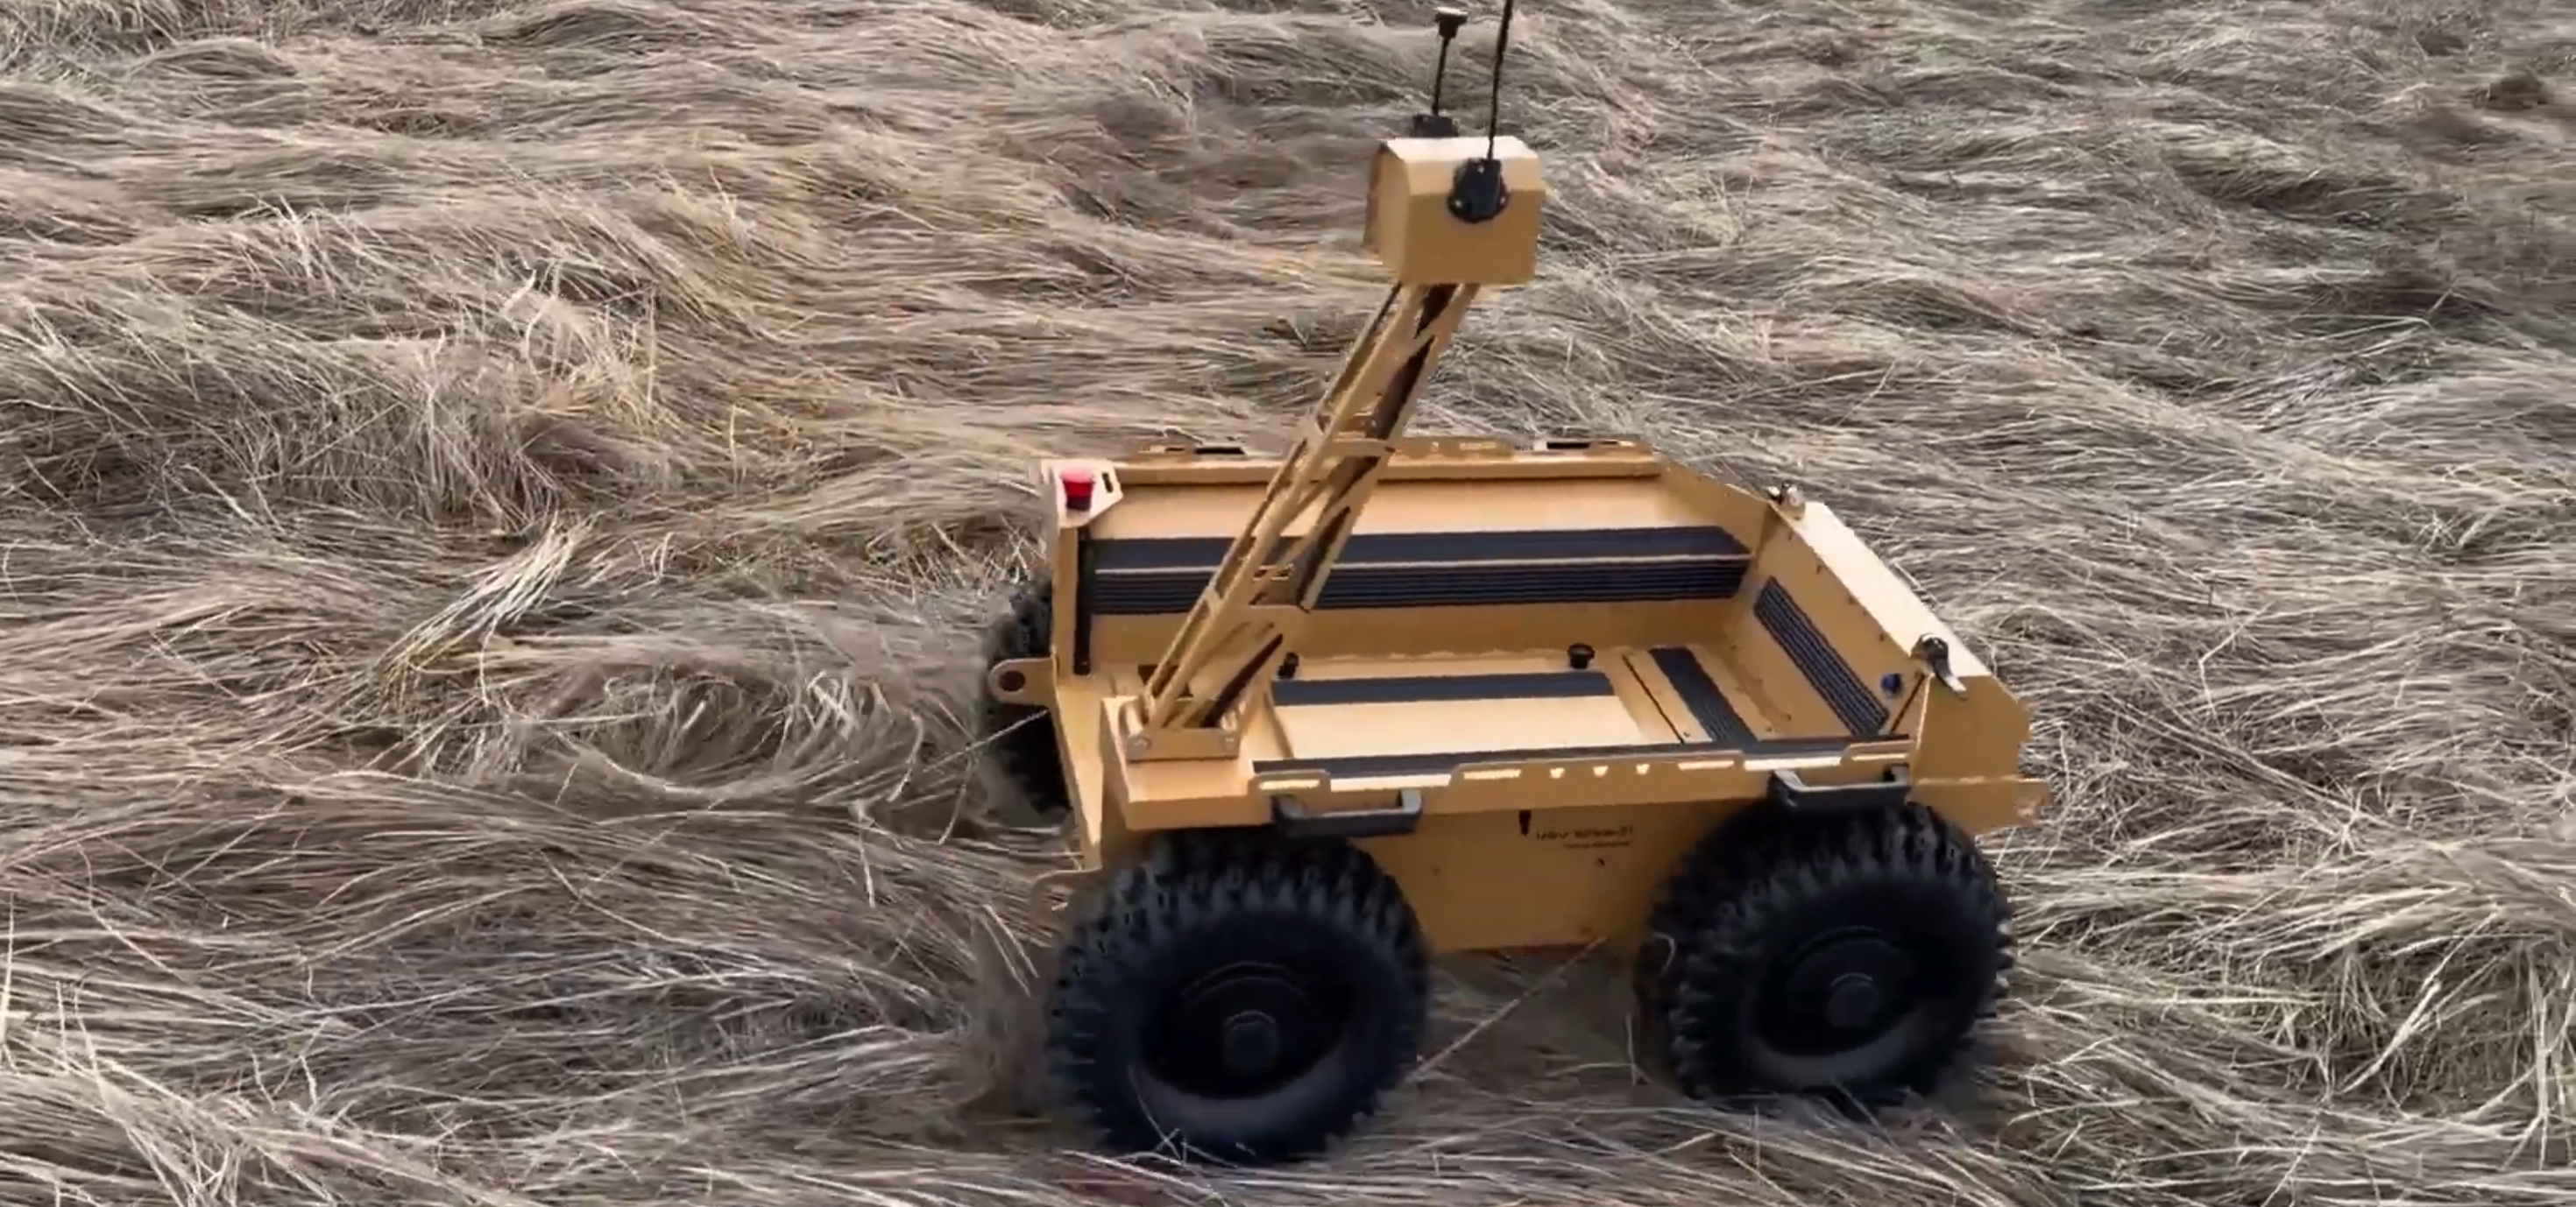 Change of warfare: Ukraine certifies 10 robotic systems for combat